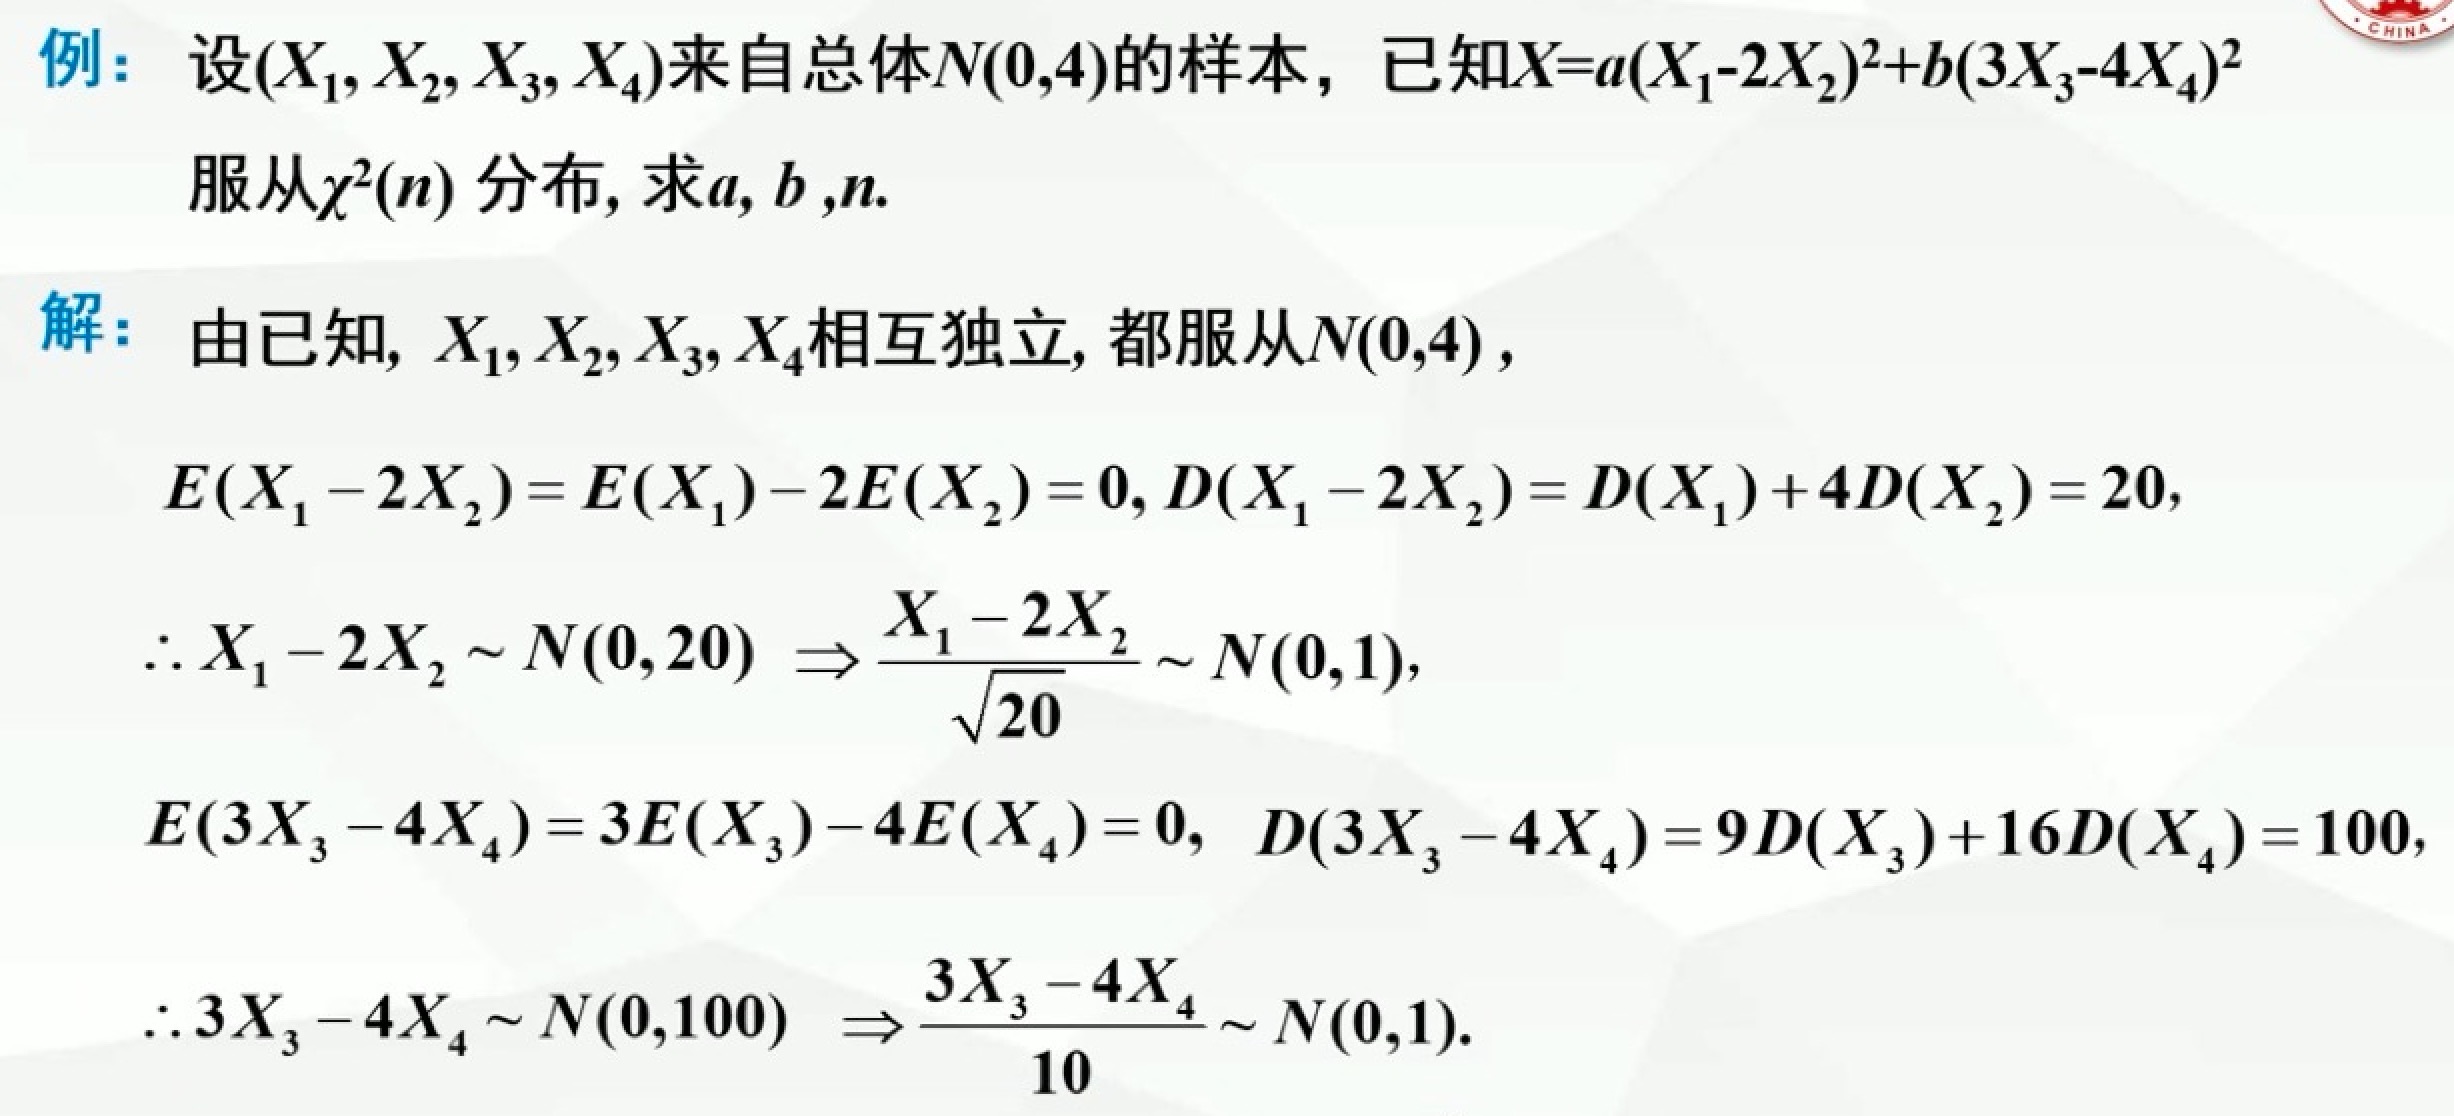 p28-X²分布例题1